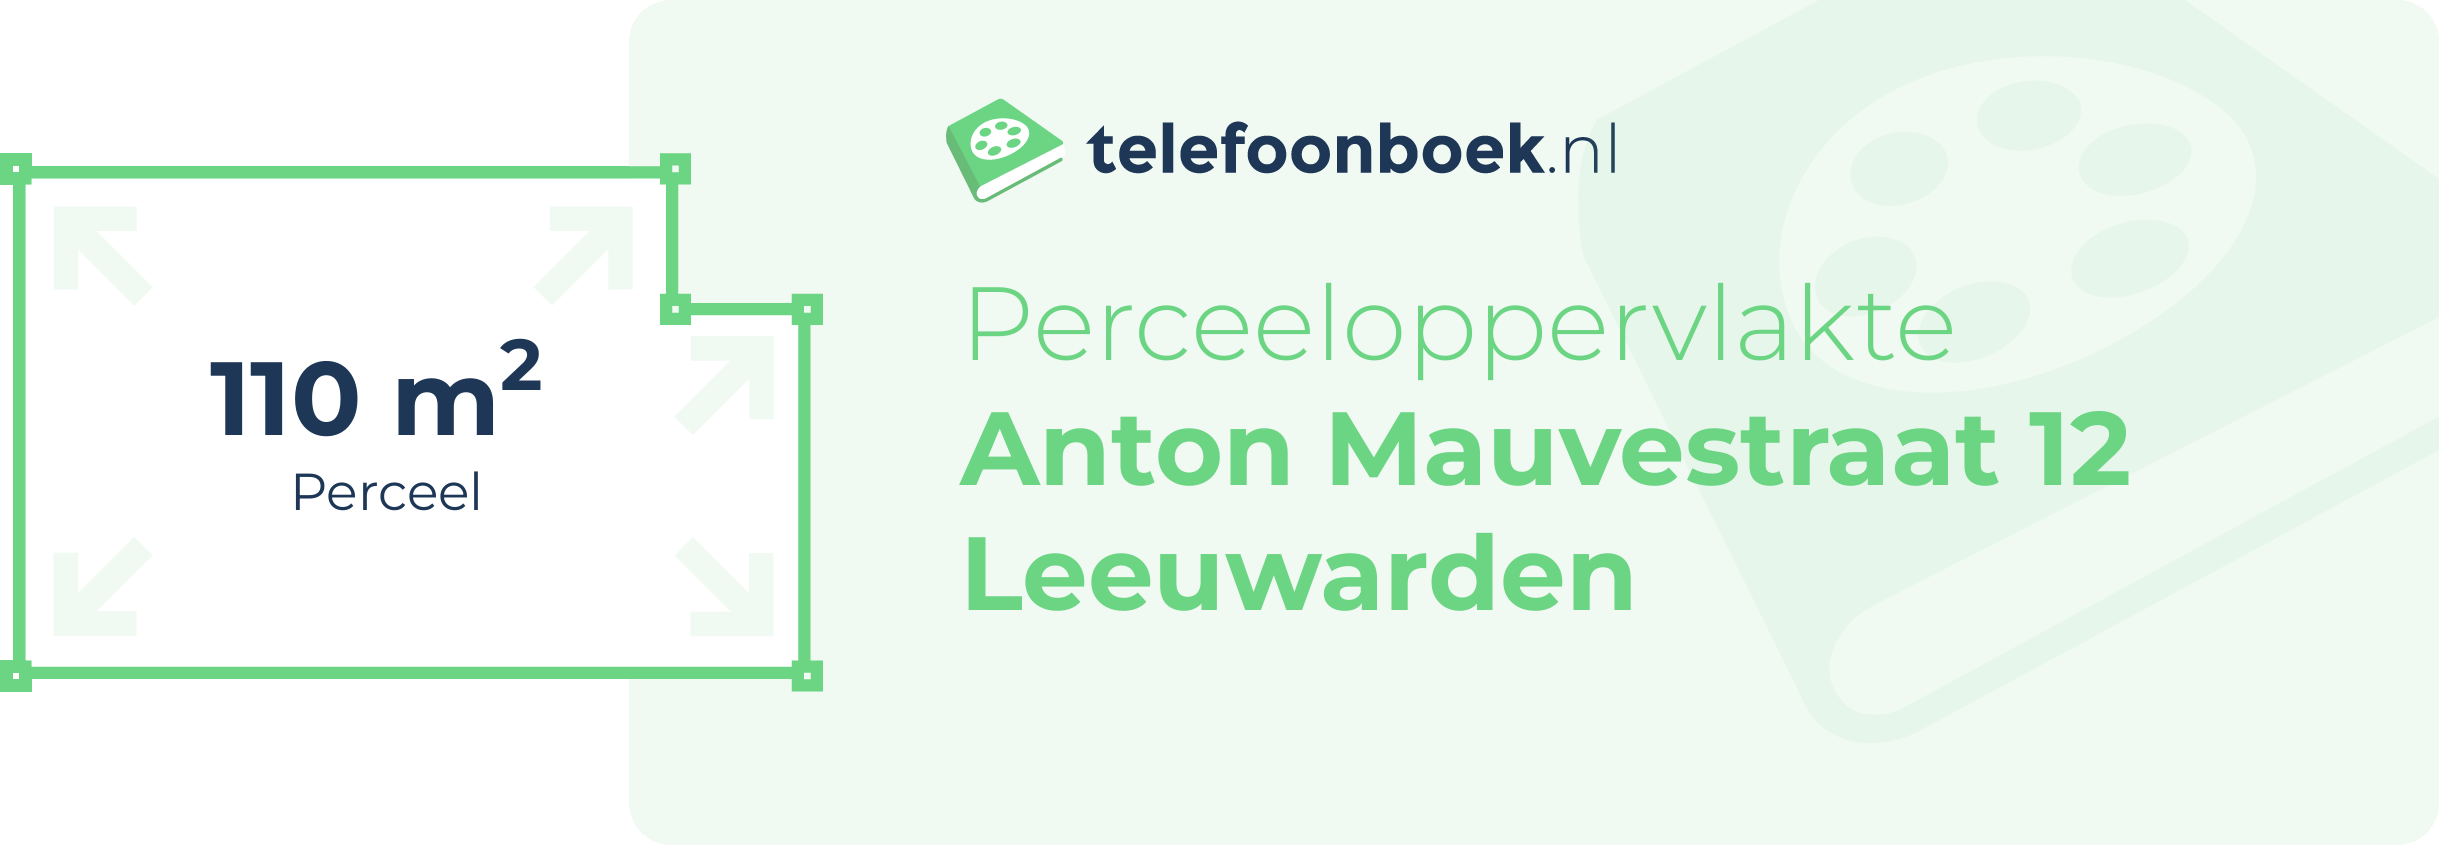 Perceeloppervlakte Anton Mauvestraat 12 Leeuwarden